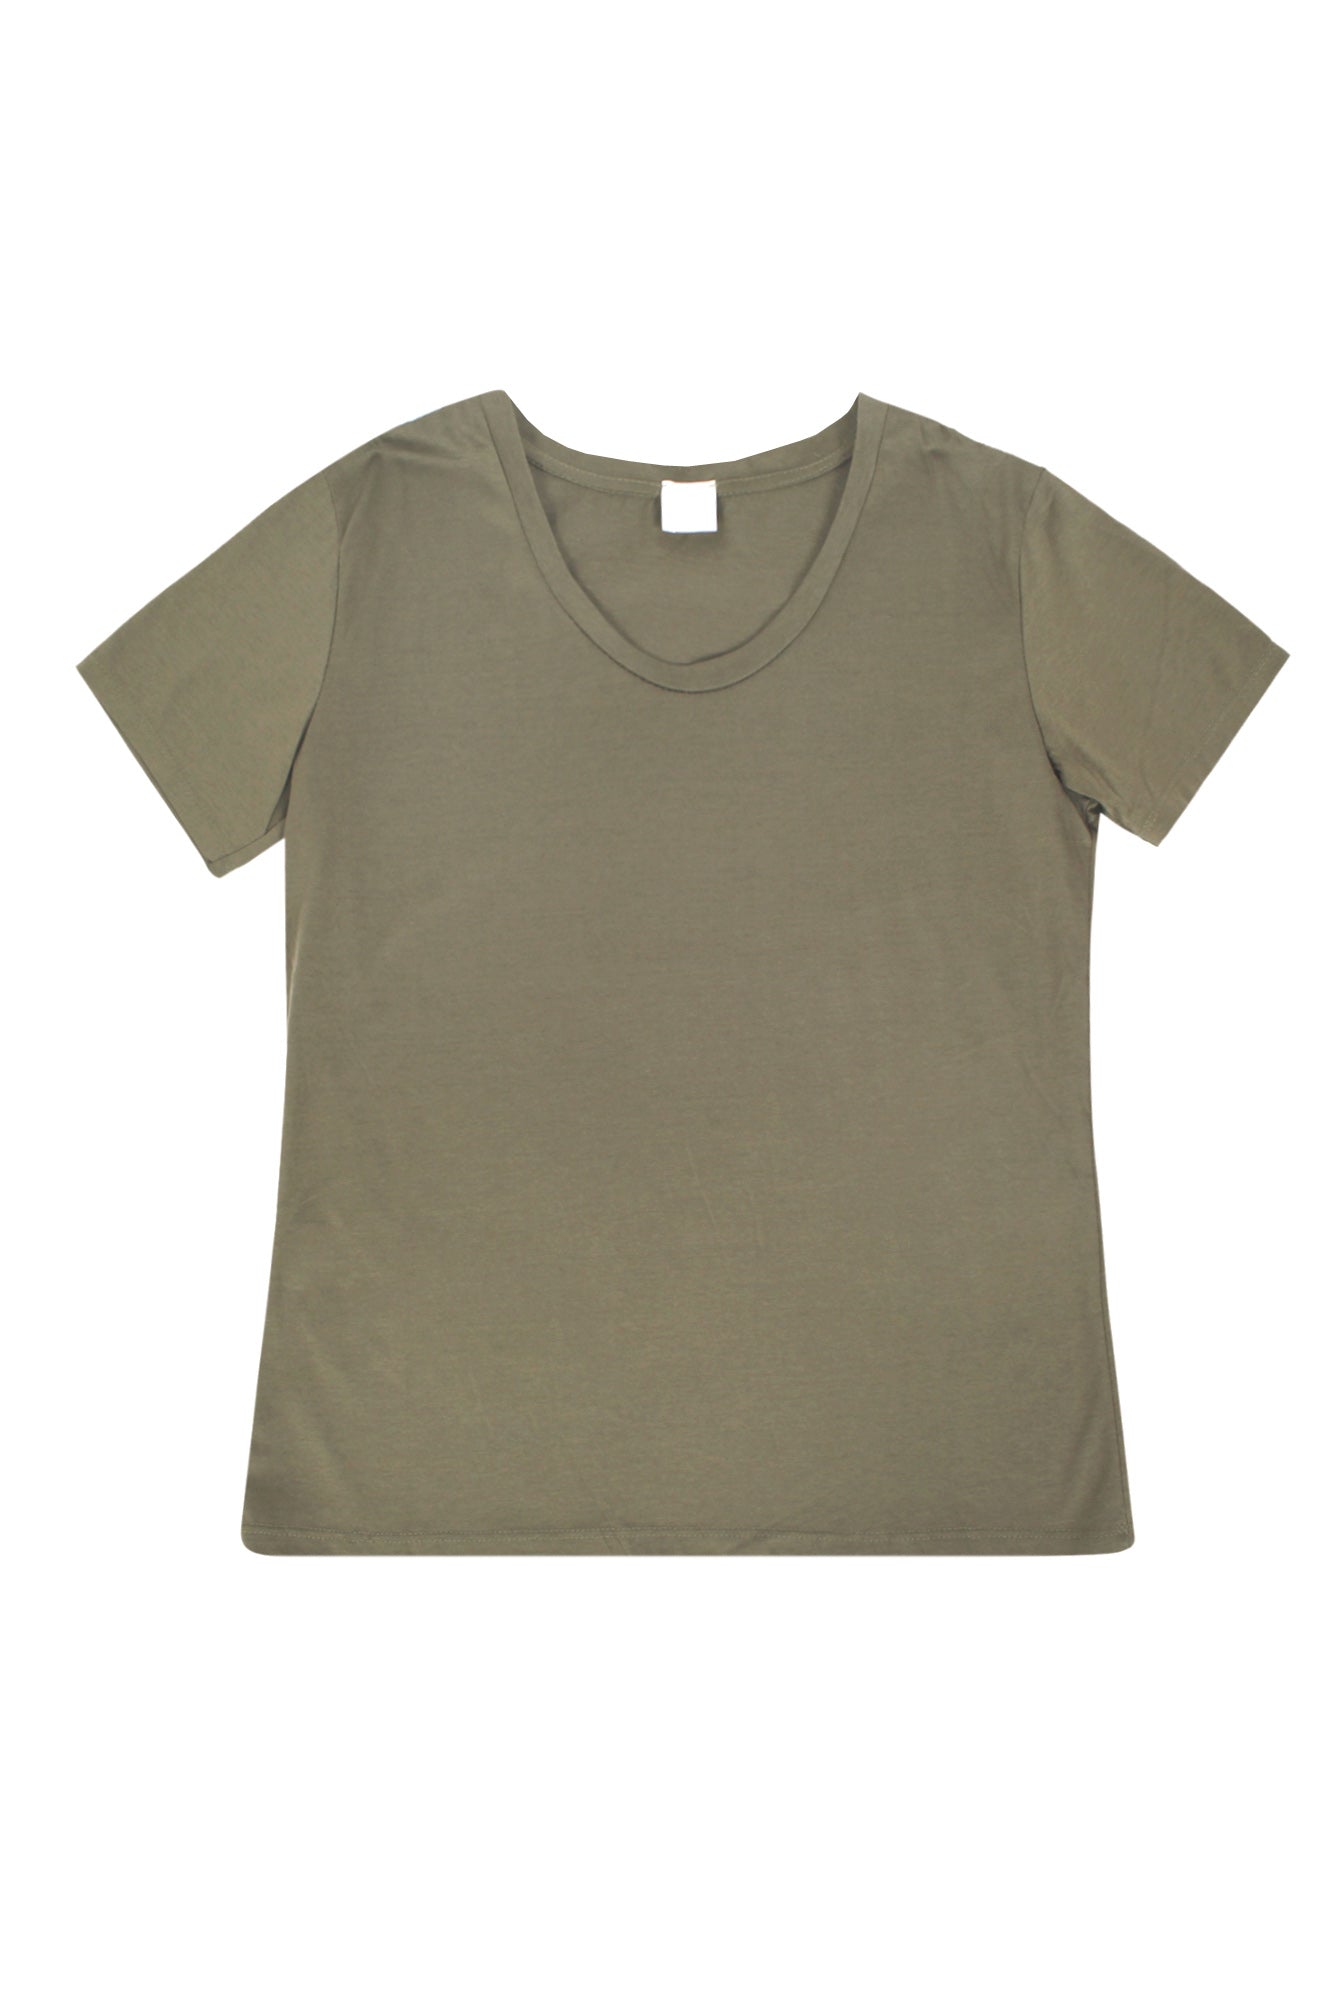 La Femme Blanche - T-shirt - 431582 - Militare